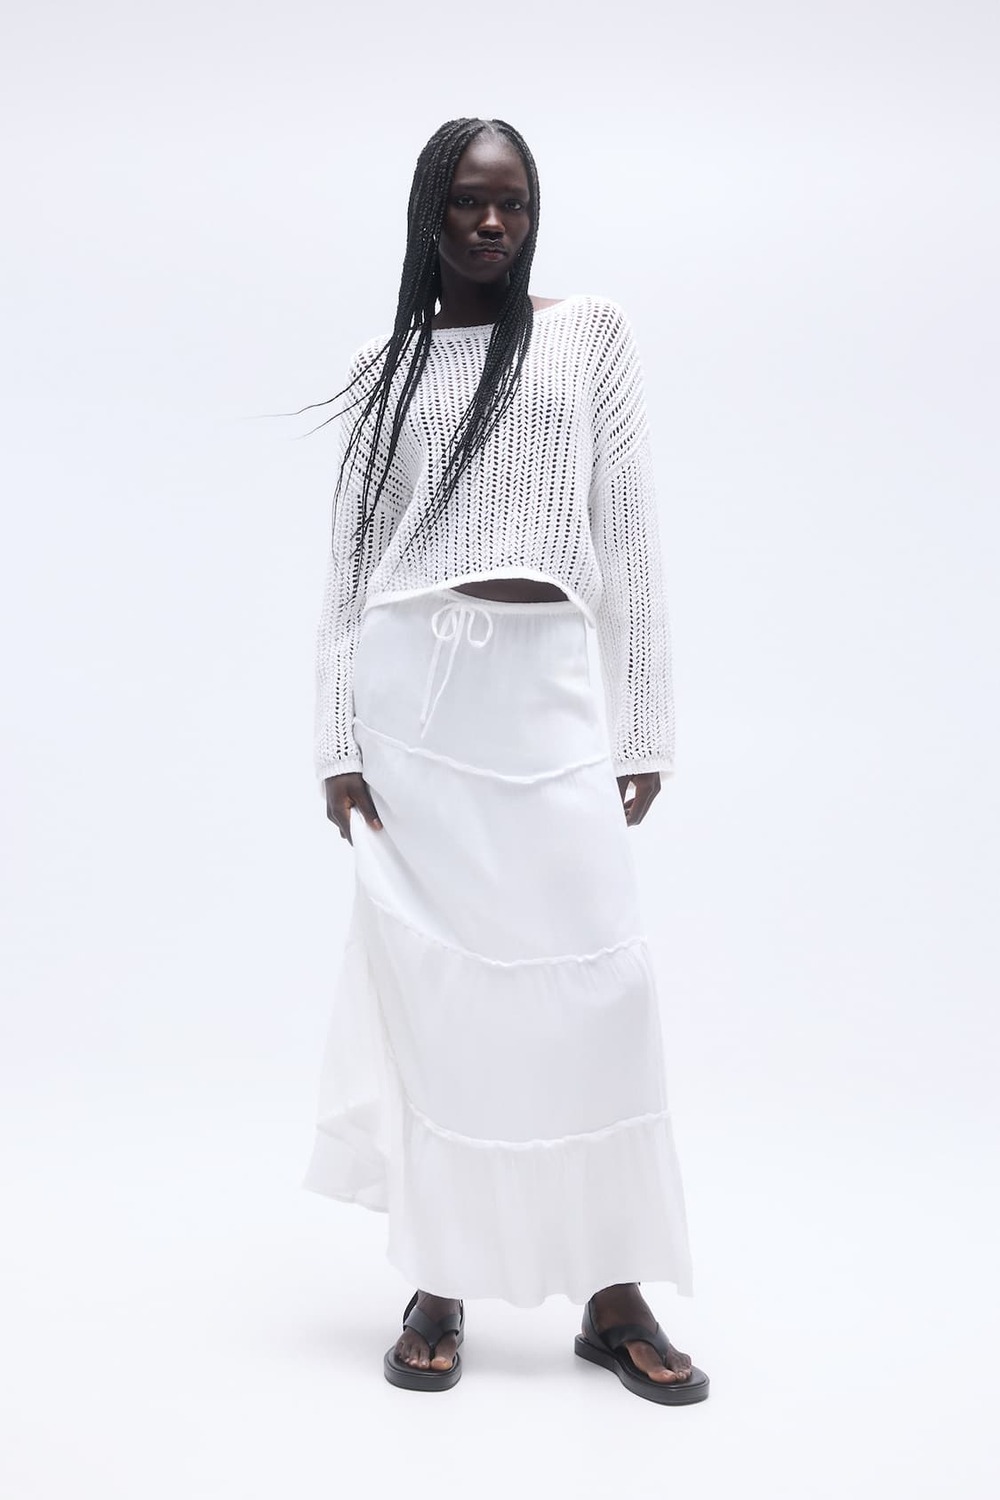 suknja 6 Bele suknje: WNB stilisti izdvajaju najlepše modele sa domaćeg tržišta